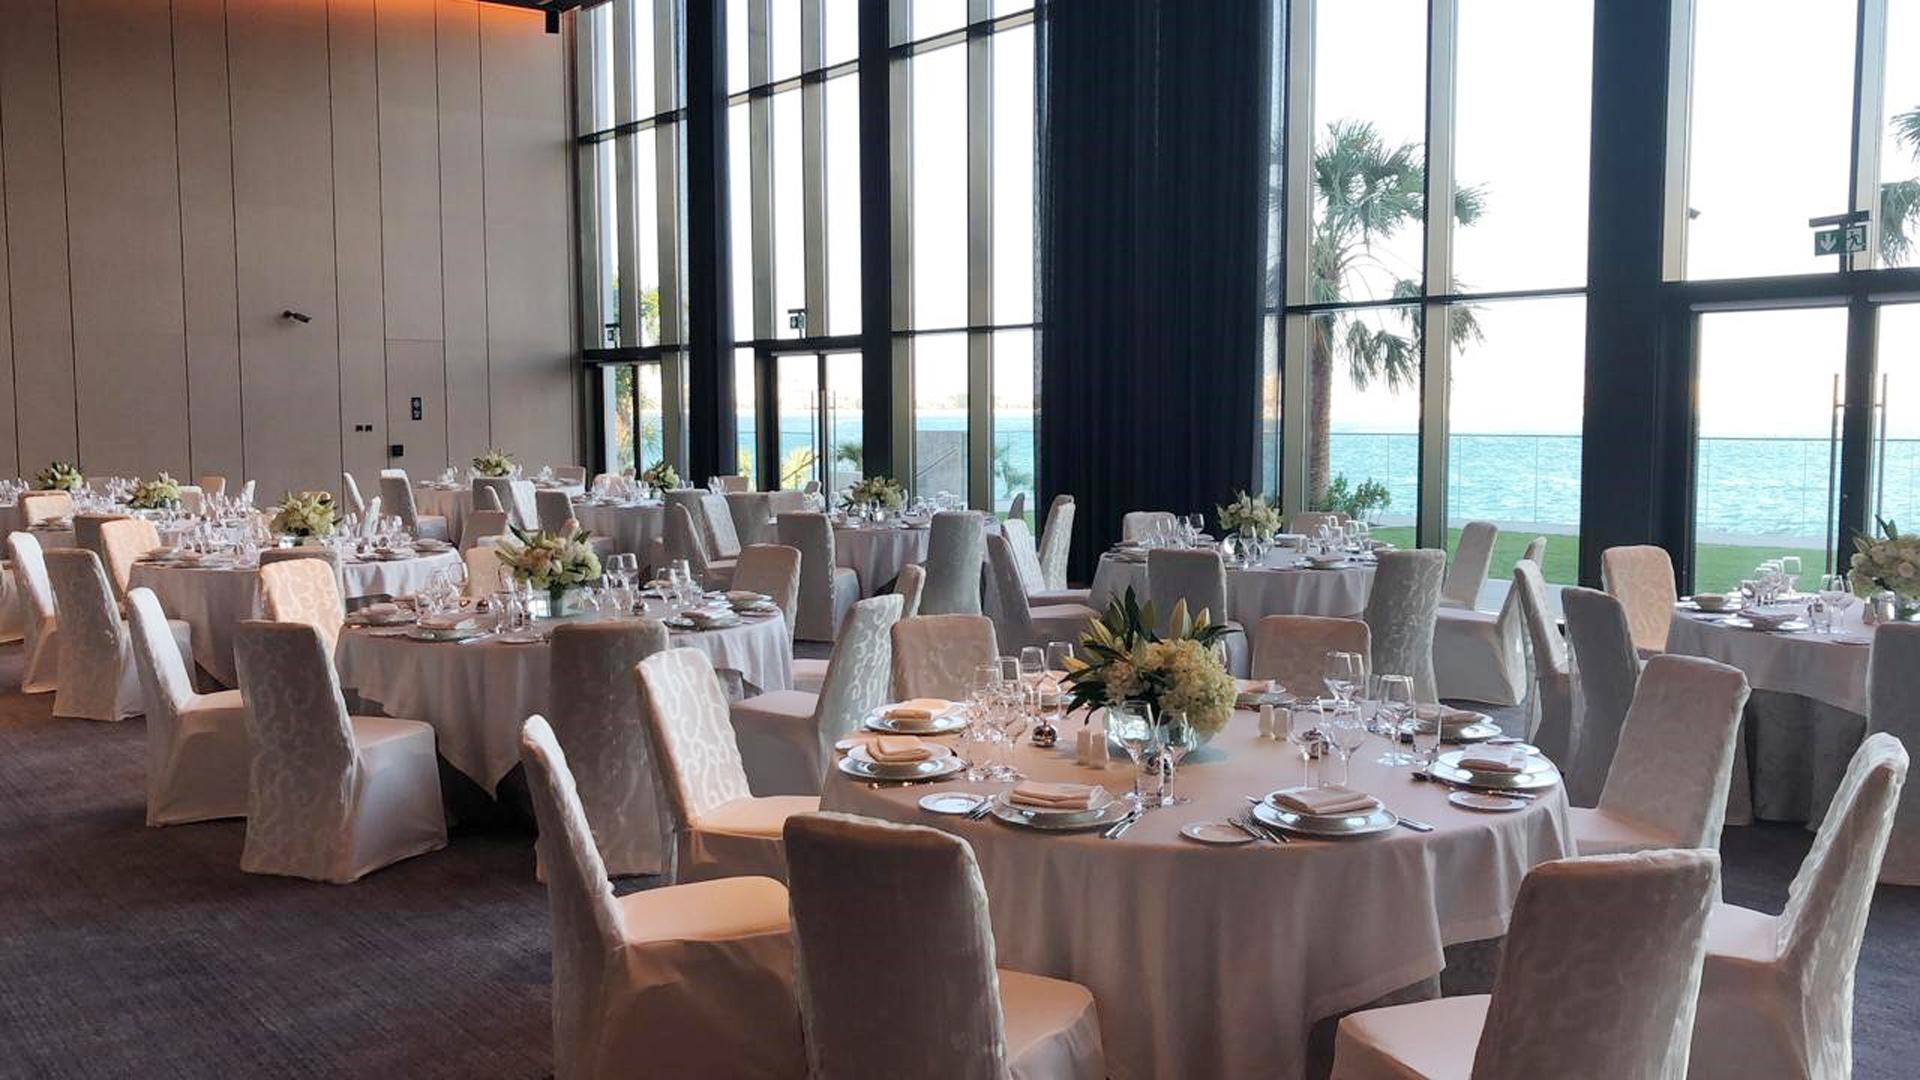 Weddings & Honeymoons at Banyan Tree Dubai